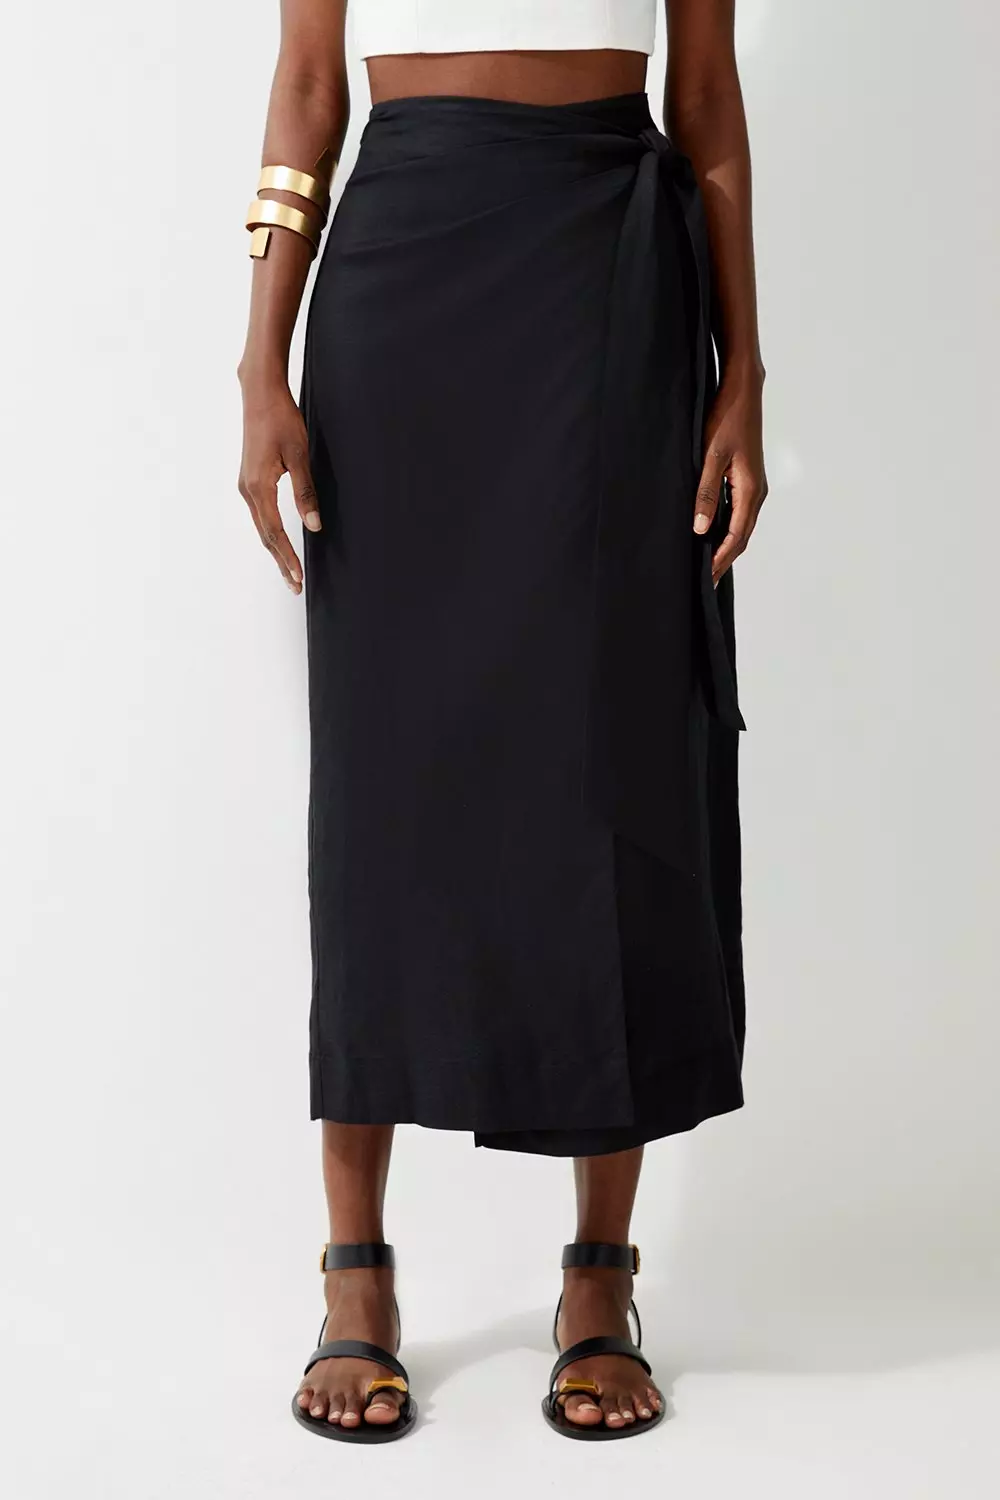 Viscose Linen Woven Tie Wrap Midi Skirt | Karen Millen